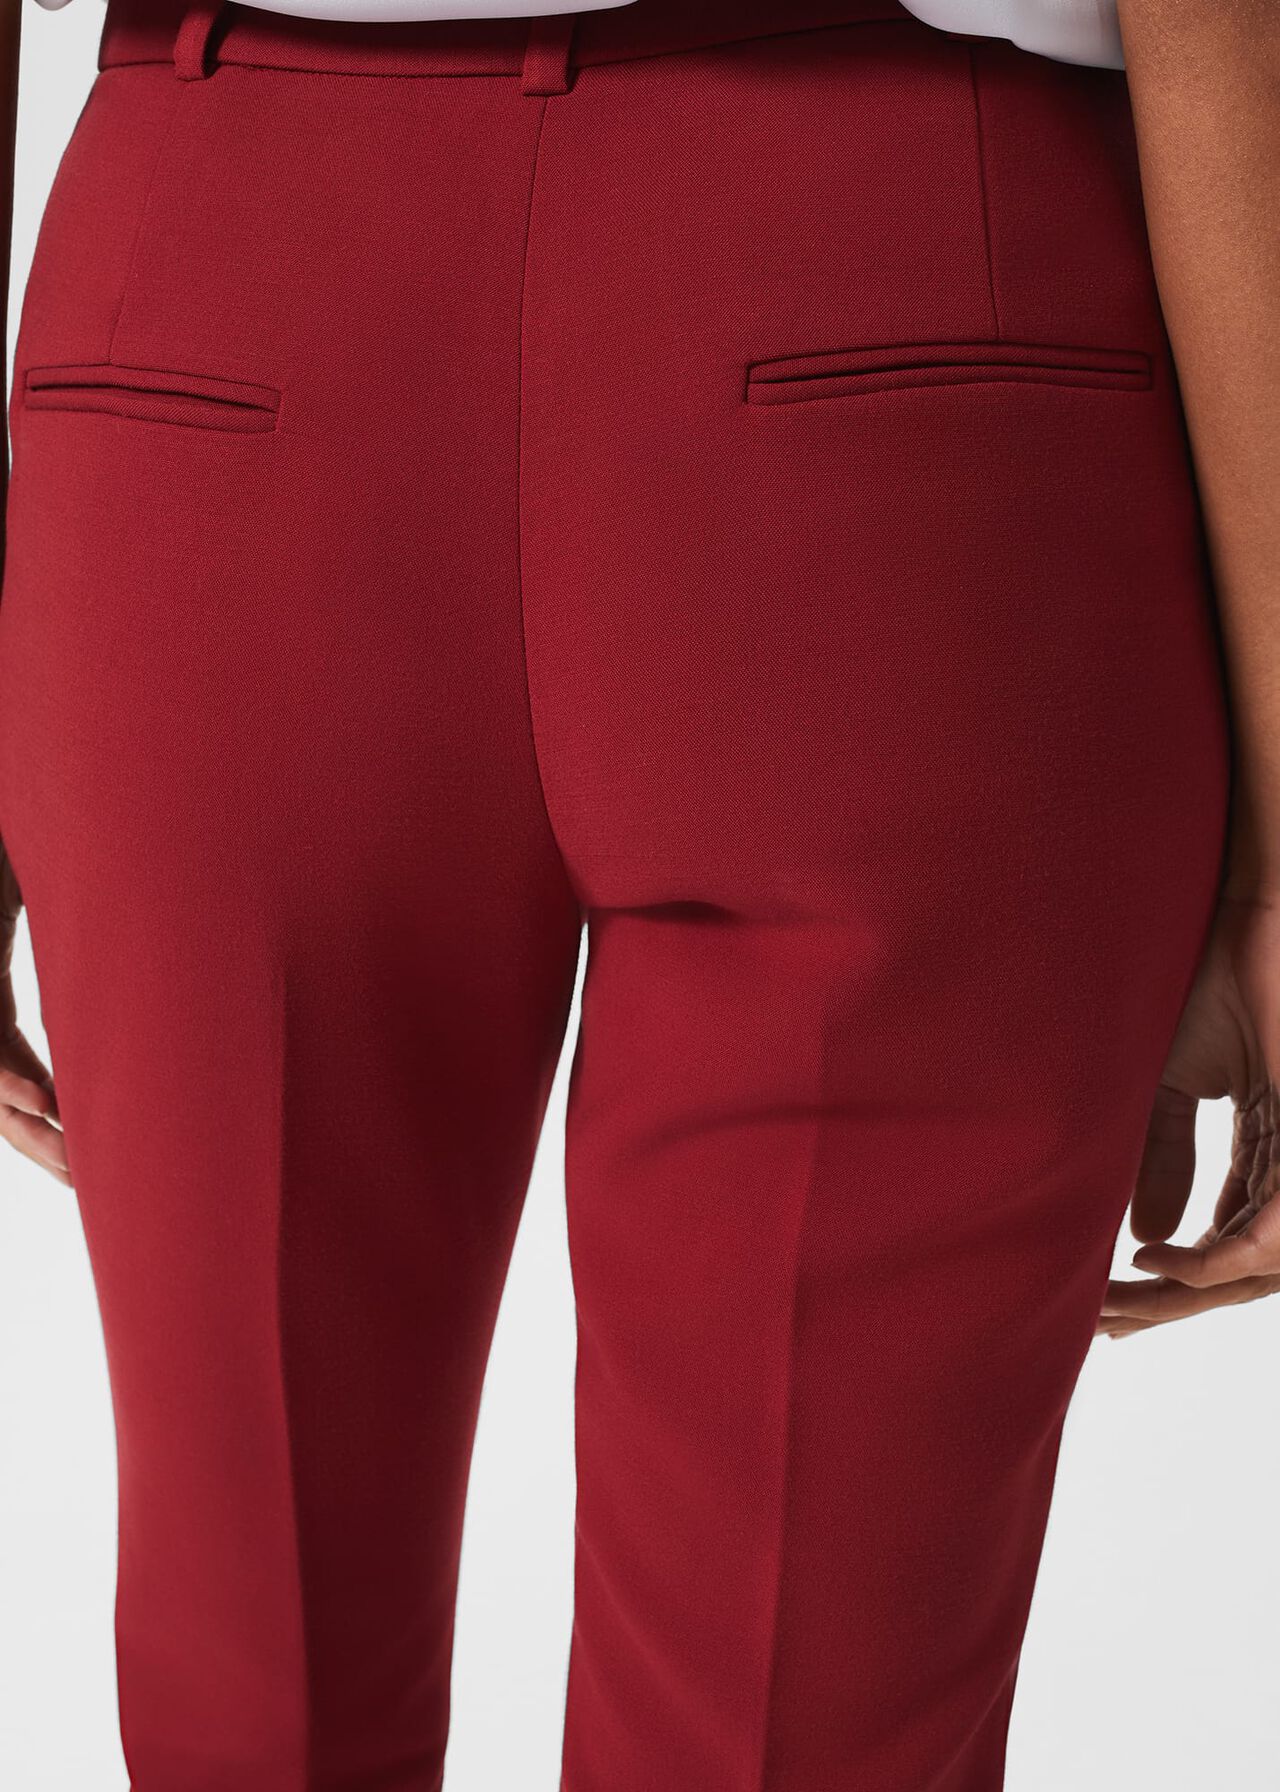 Suki Trousers, Rhubarb Red, hi-res